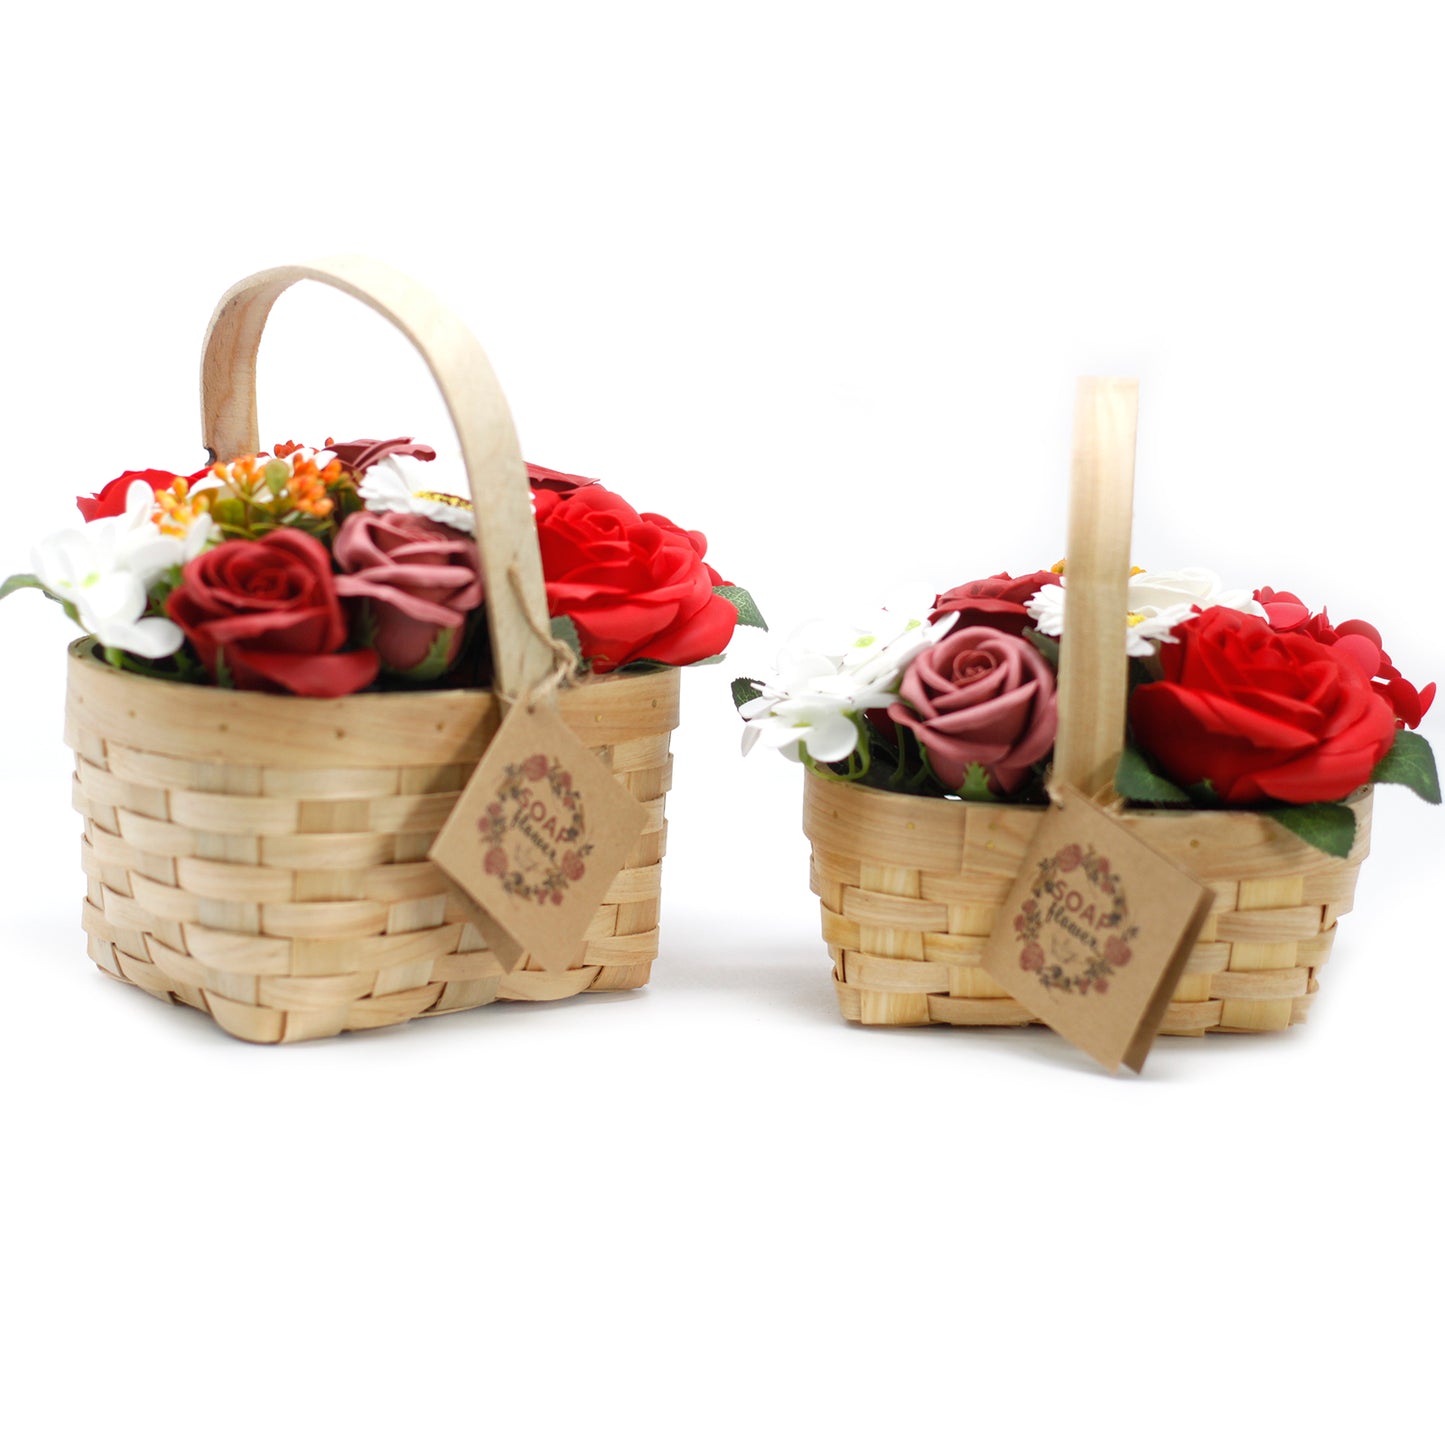 Medium Red Soap Flower Bouquet in Wicker Basket